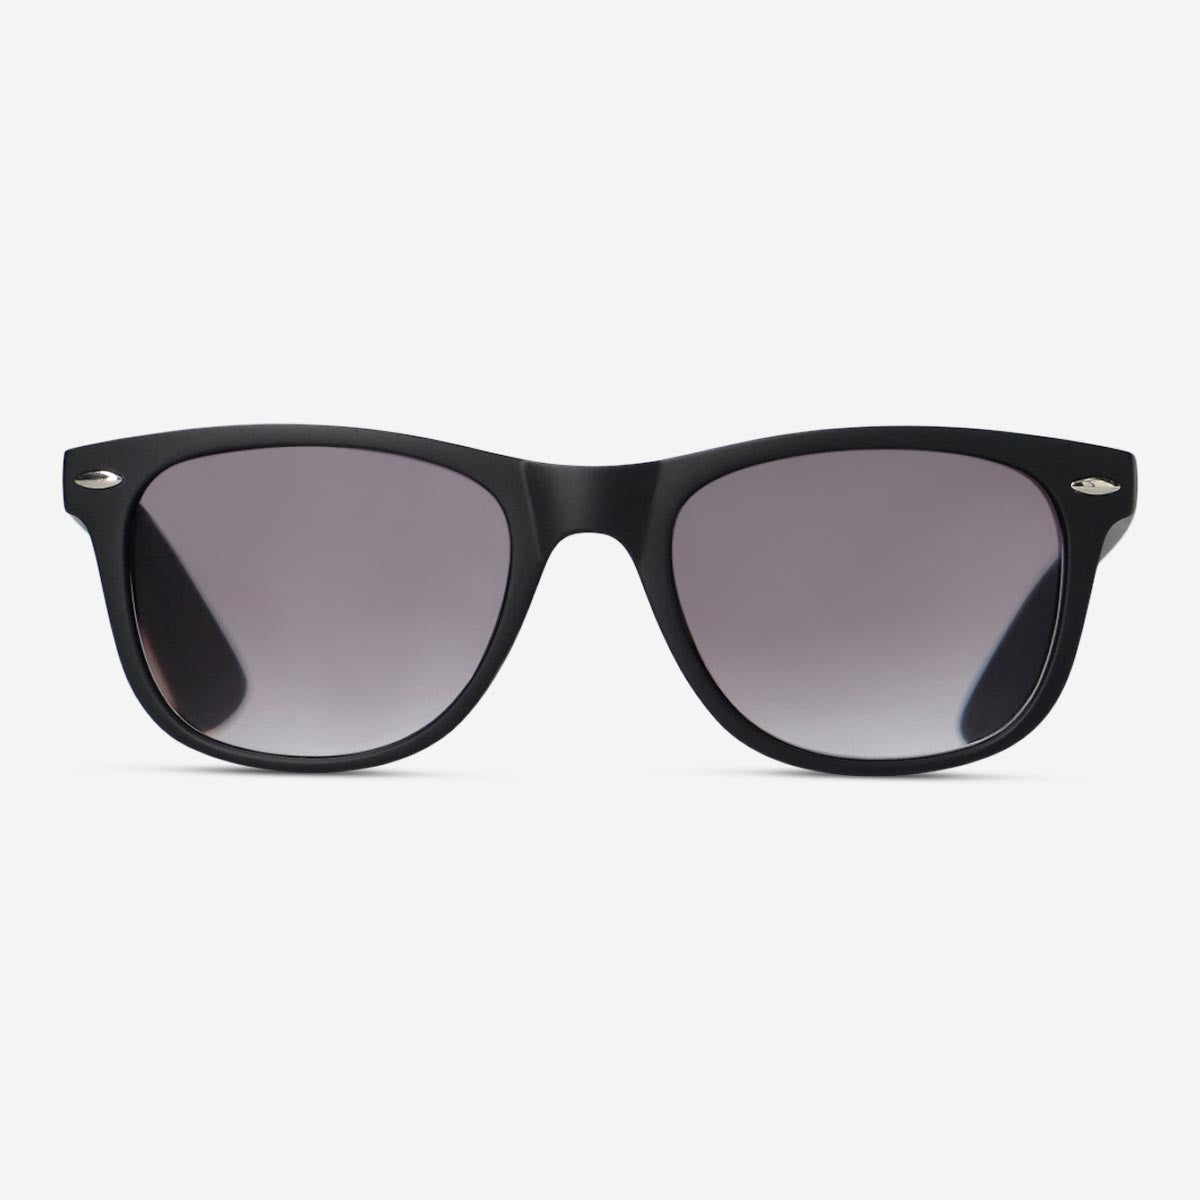 Læse-solbriller. 2.0 €6| Tiger